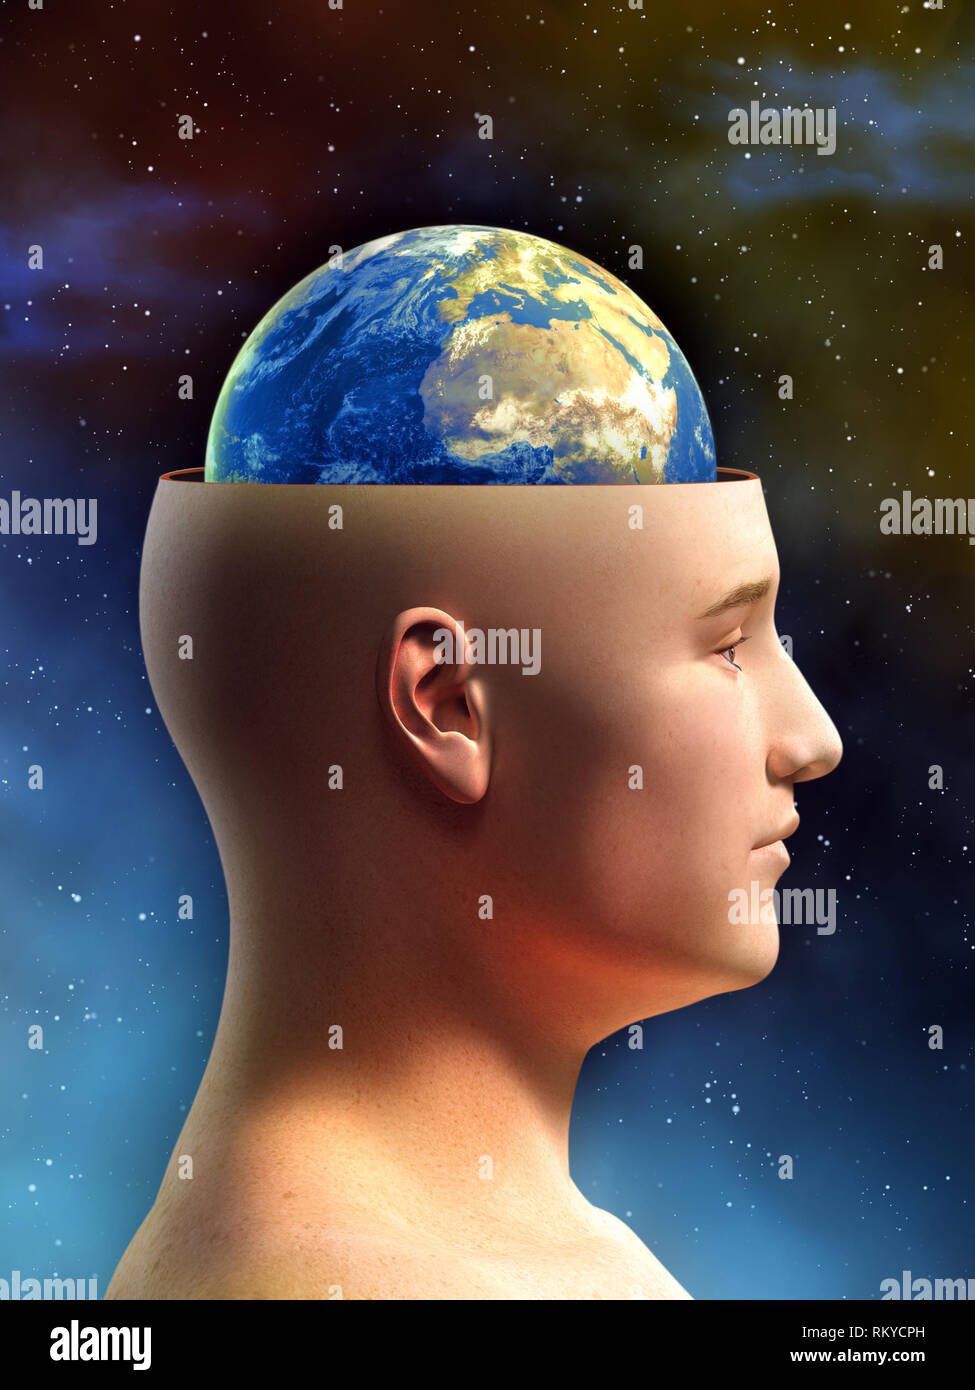 Giovane maschio figura ha la parte superiore della sua testa rimossa, che mostra la terra in luogo del suo cervello. Illustrazione Digitale. Foto Stock